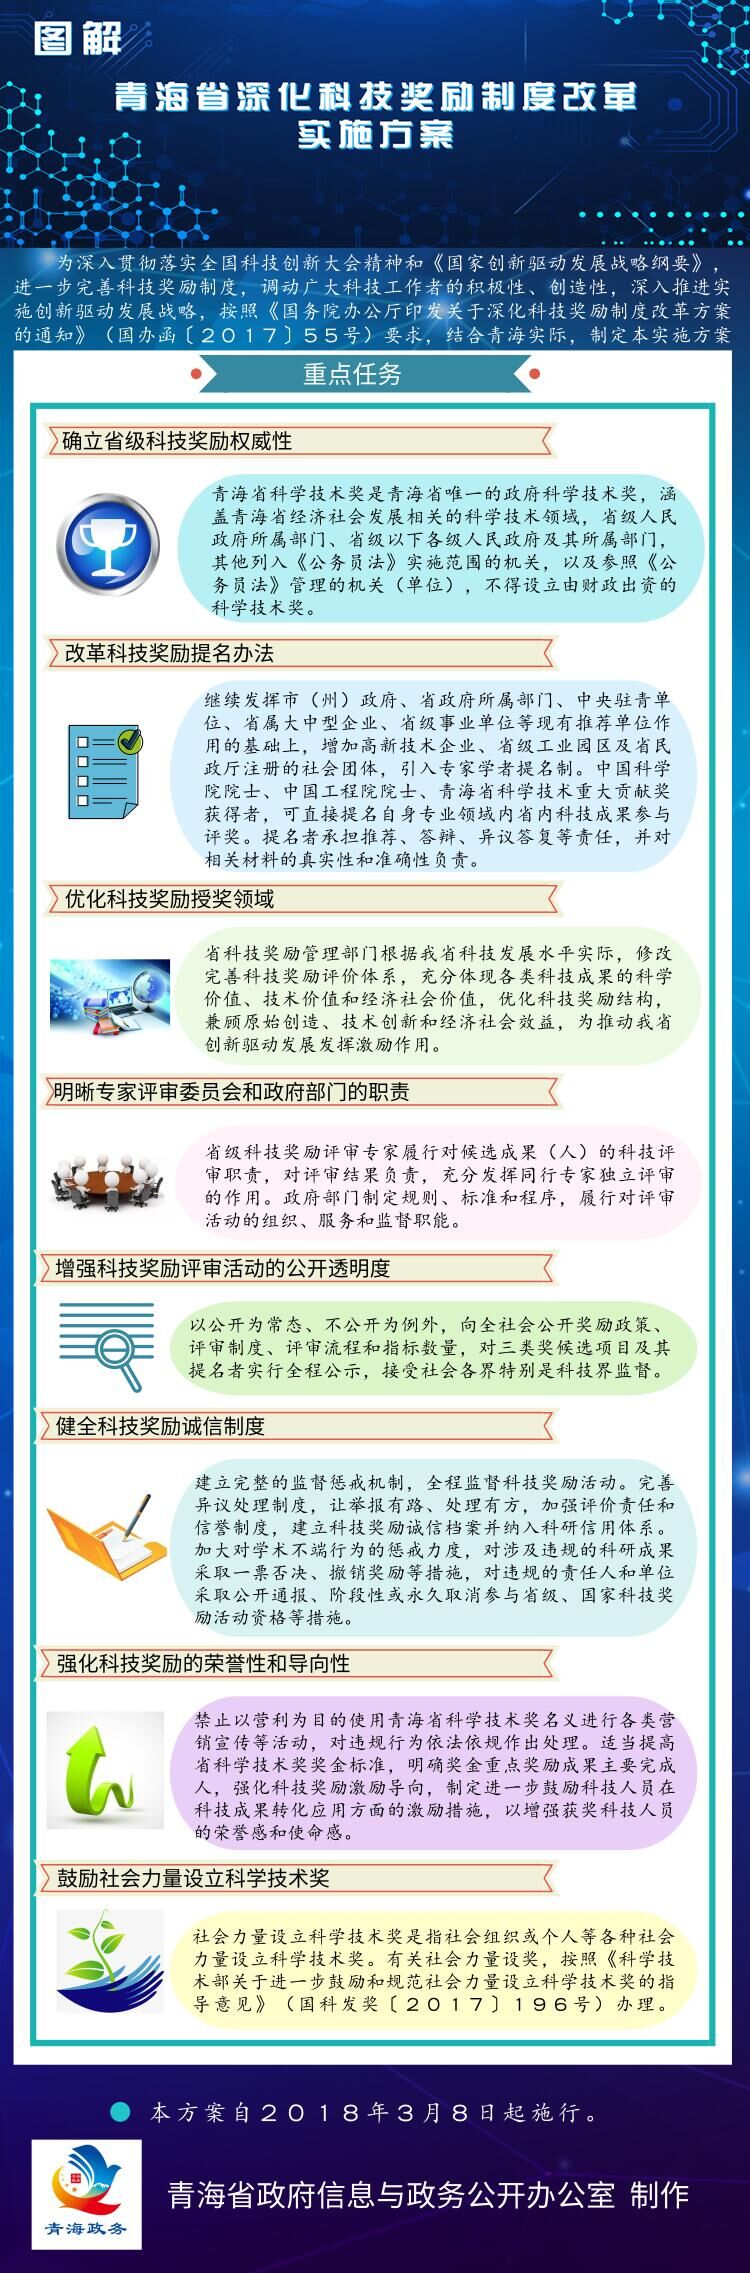 青海省深化科技奖励制度改革实施方案.jpg